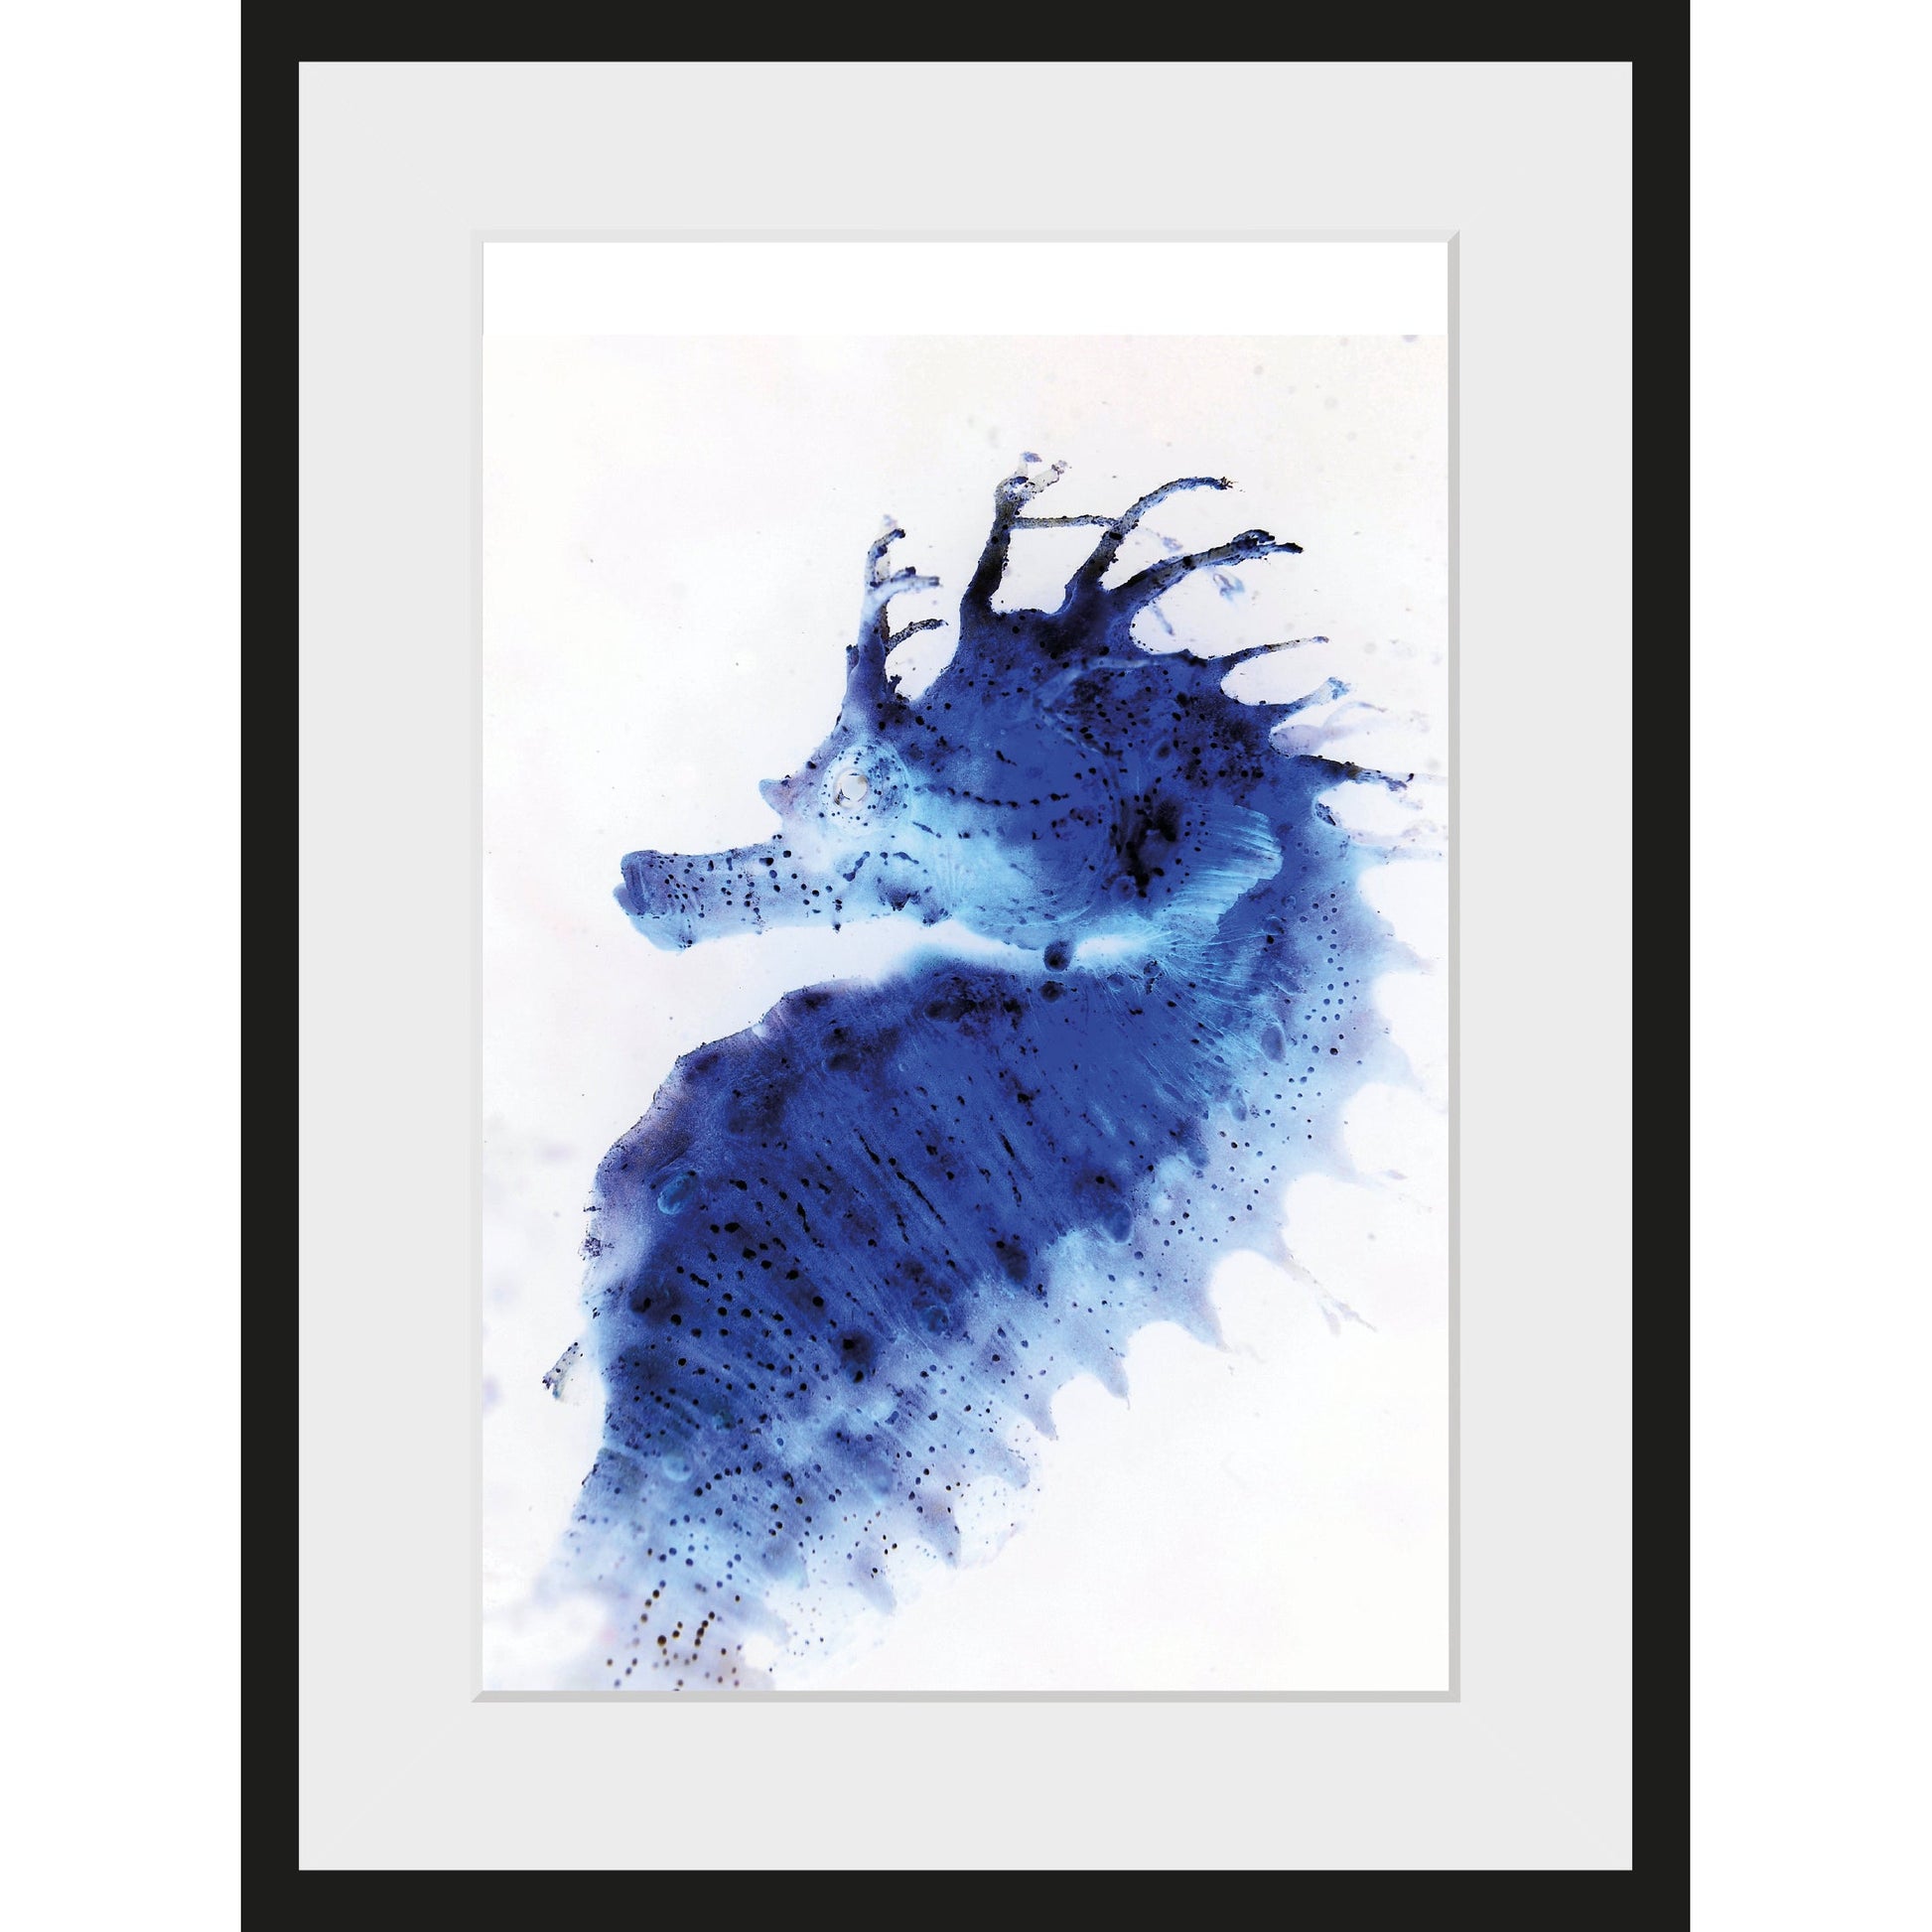 Gerahmtes Bild Blue Sea Horse Online - Stilvolle Kunstwerke kaufen – queence